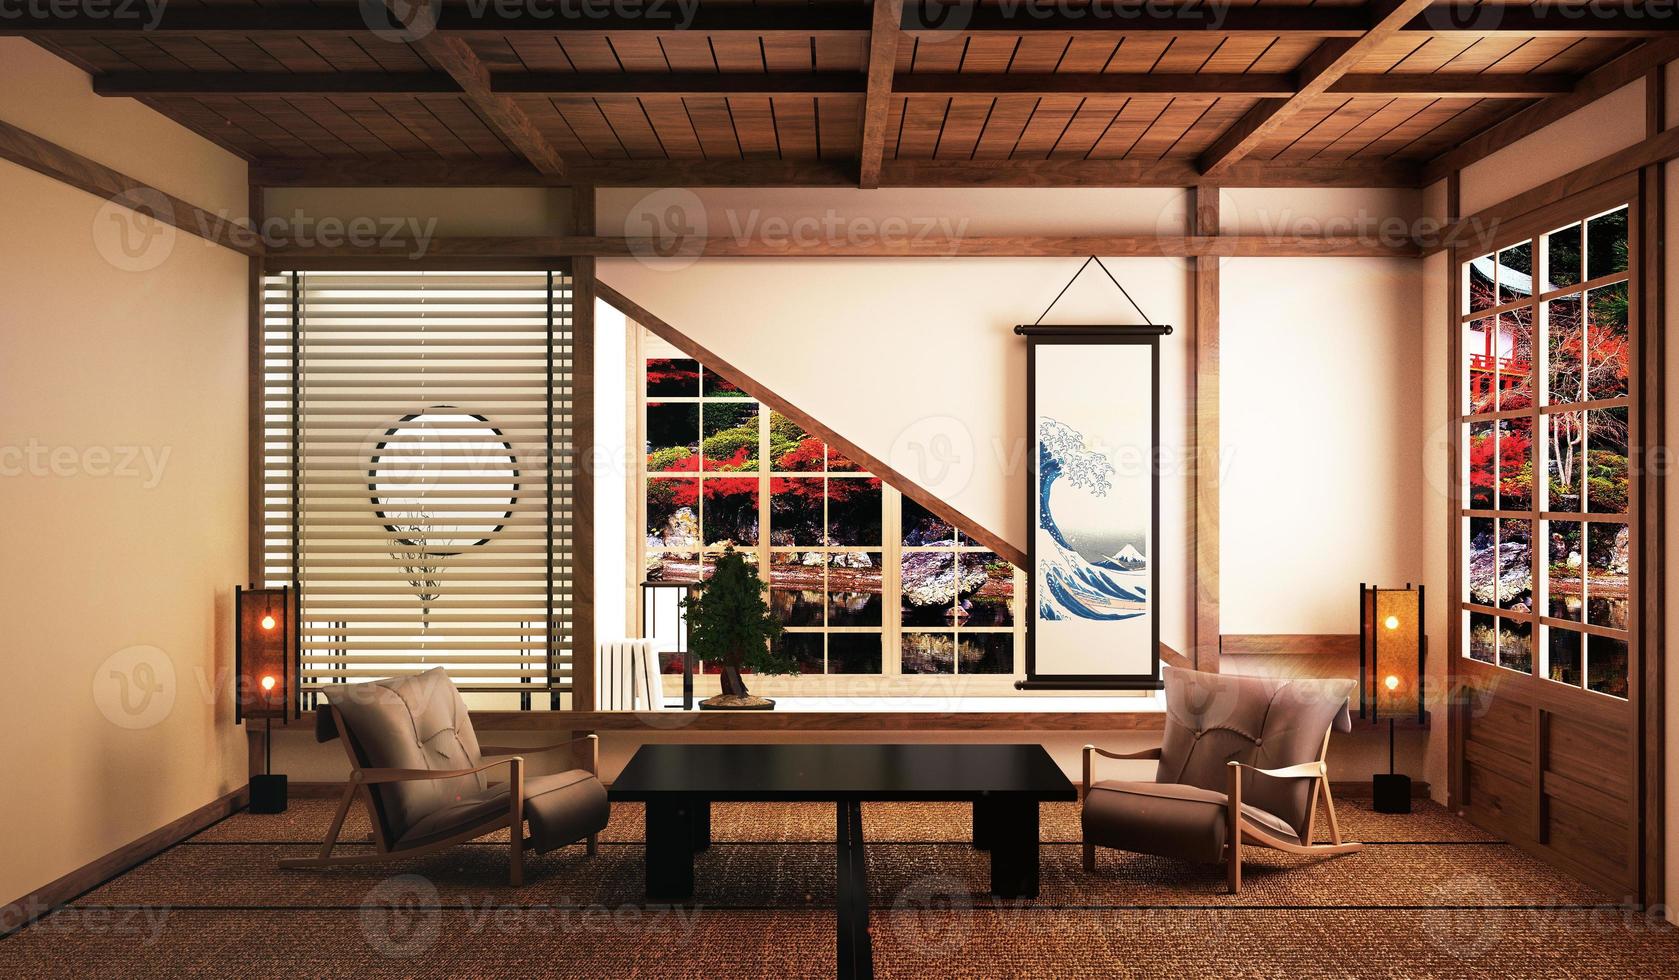 ritme Prestigieus Array mooie woonkamer met lage tafel, fauteuils, bonsaiboom en decoratie in  Japanse stijl en uitzicht op bos Japan. 3D-rendering 4604281 Stockfoto